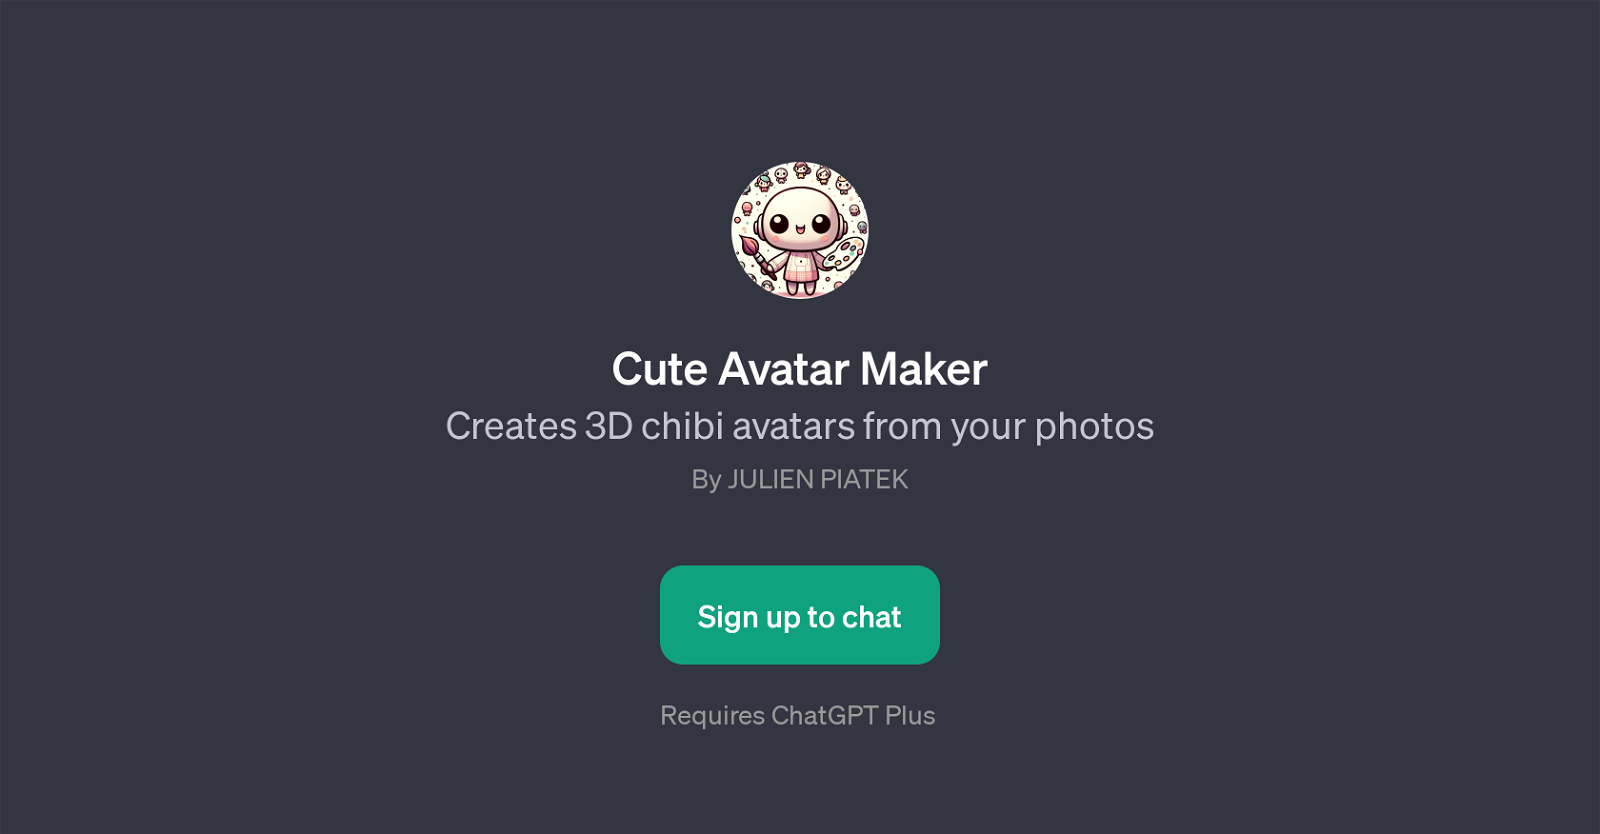 Cute Avatar Maker website